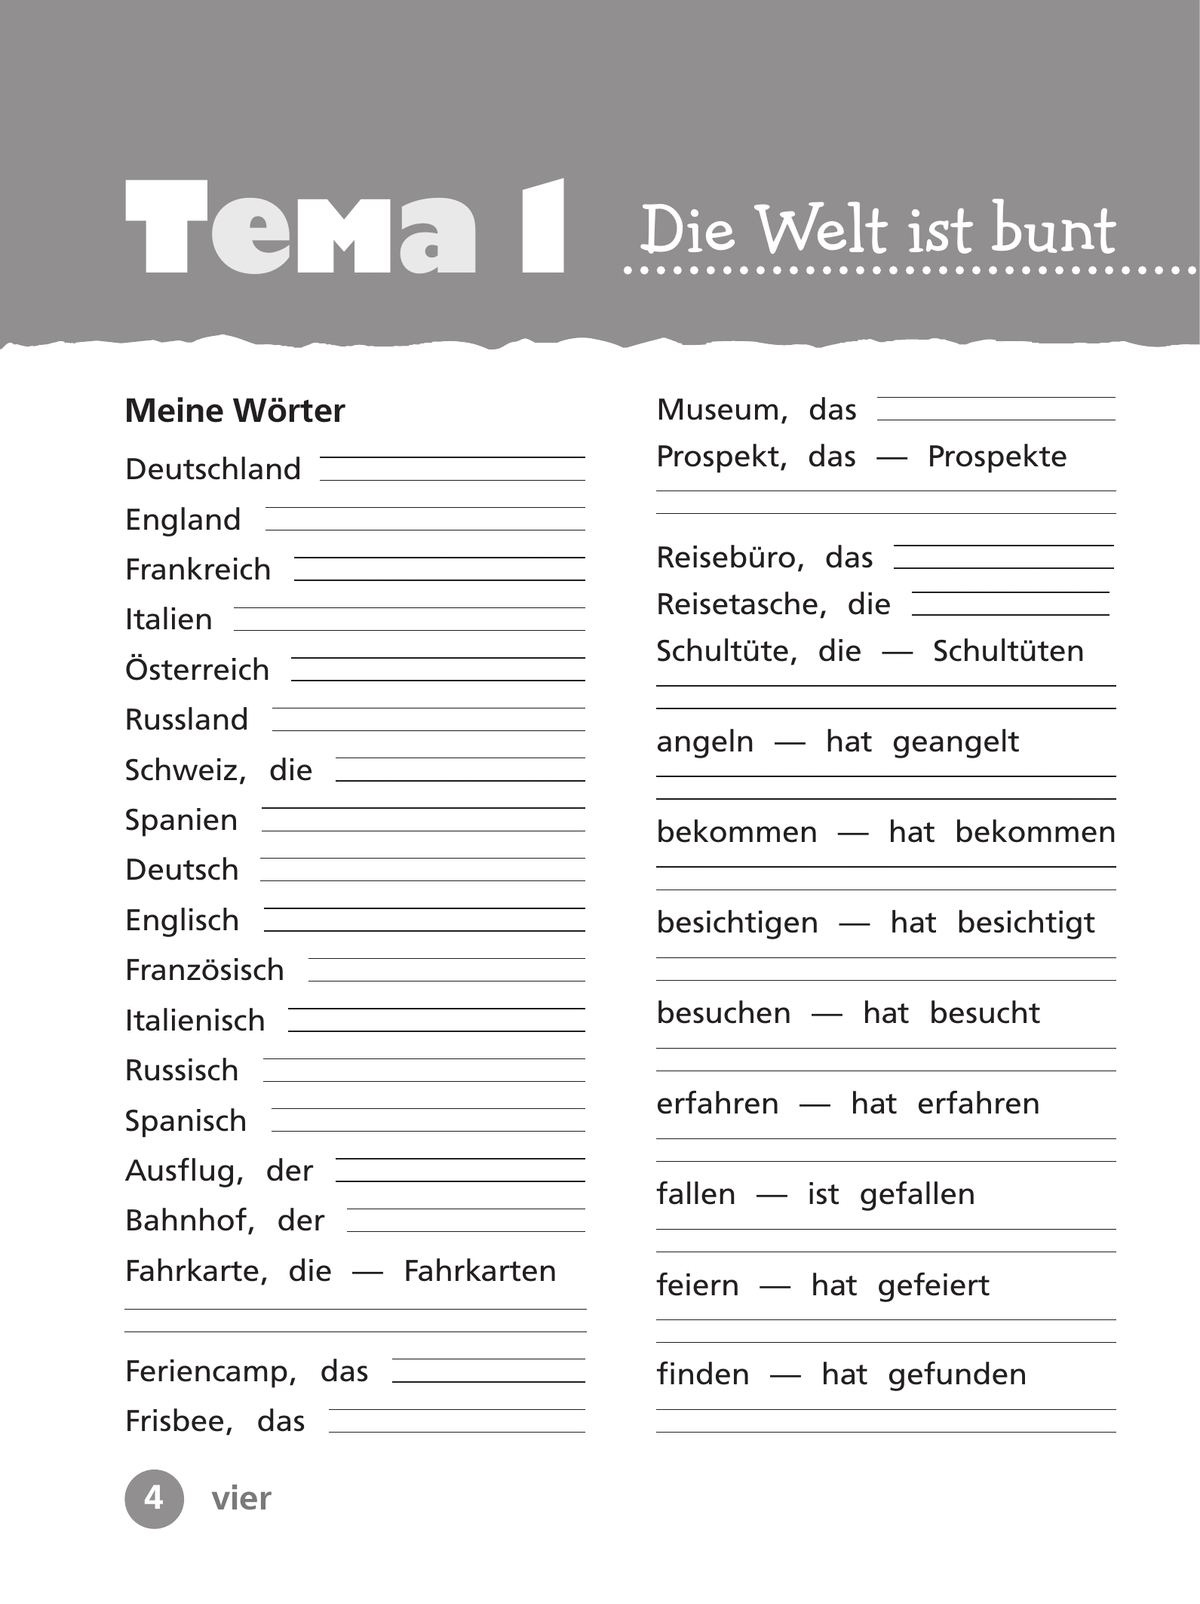 Немецкий язык. Рабочая тетрадь. 4 класс. В 2 ч. Часть 1 6